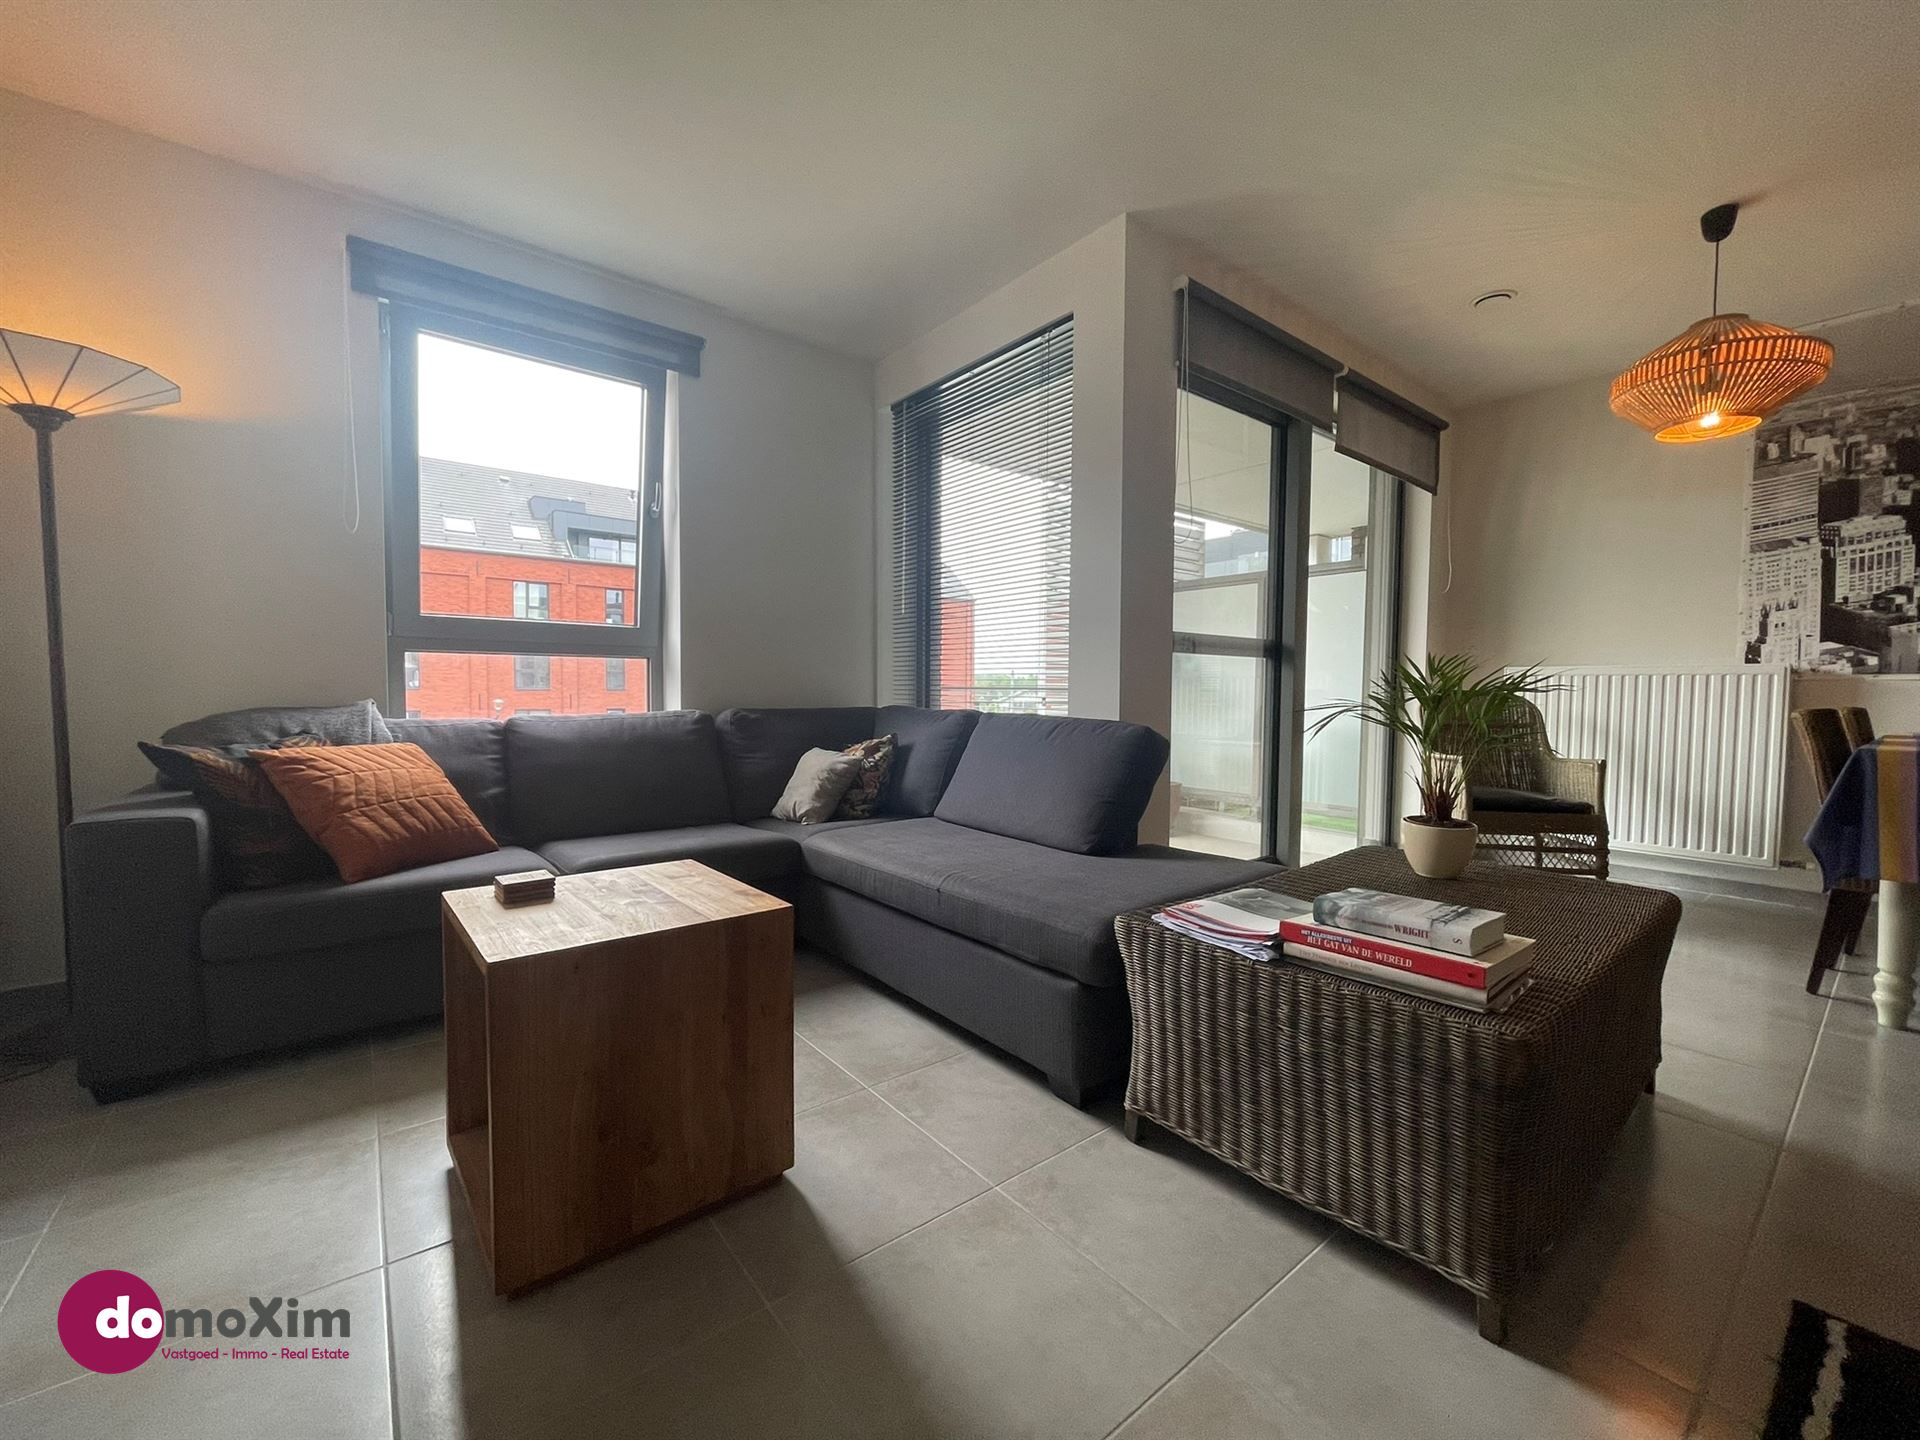 Lichtrijk appartement met 2 slaapkamers in hartje Boortmeerbeek foto 4